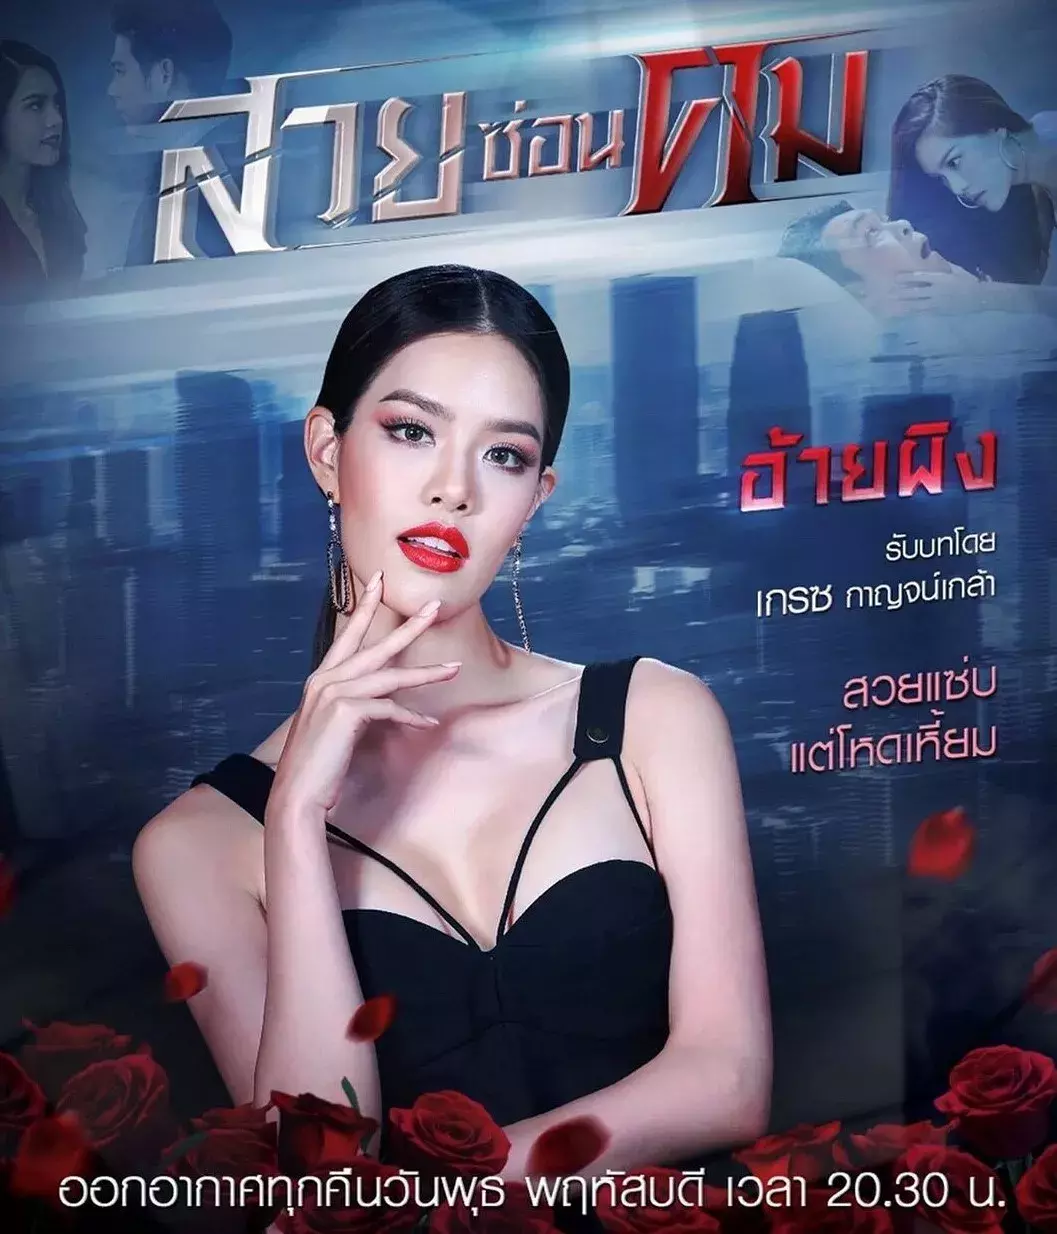 这个夏天看泰国电视剧也可以“让心冷静下来”。